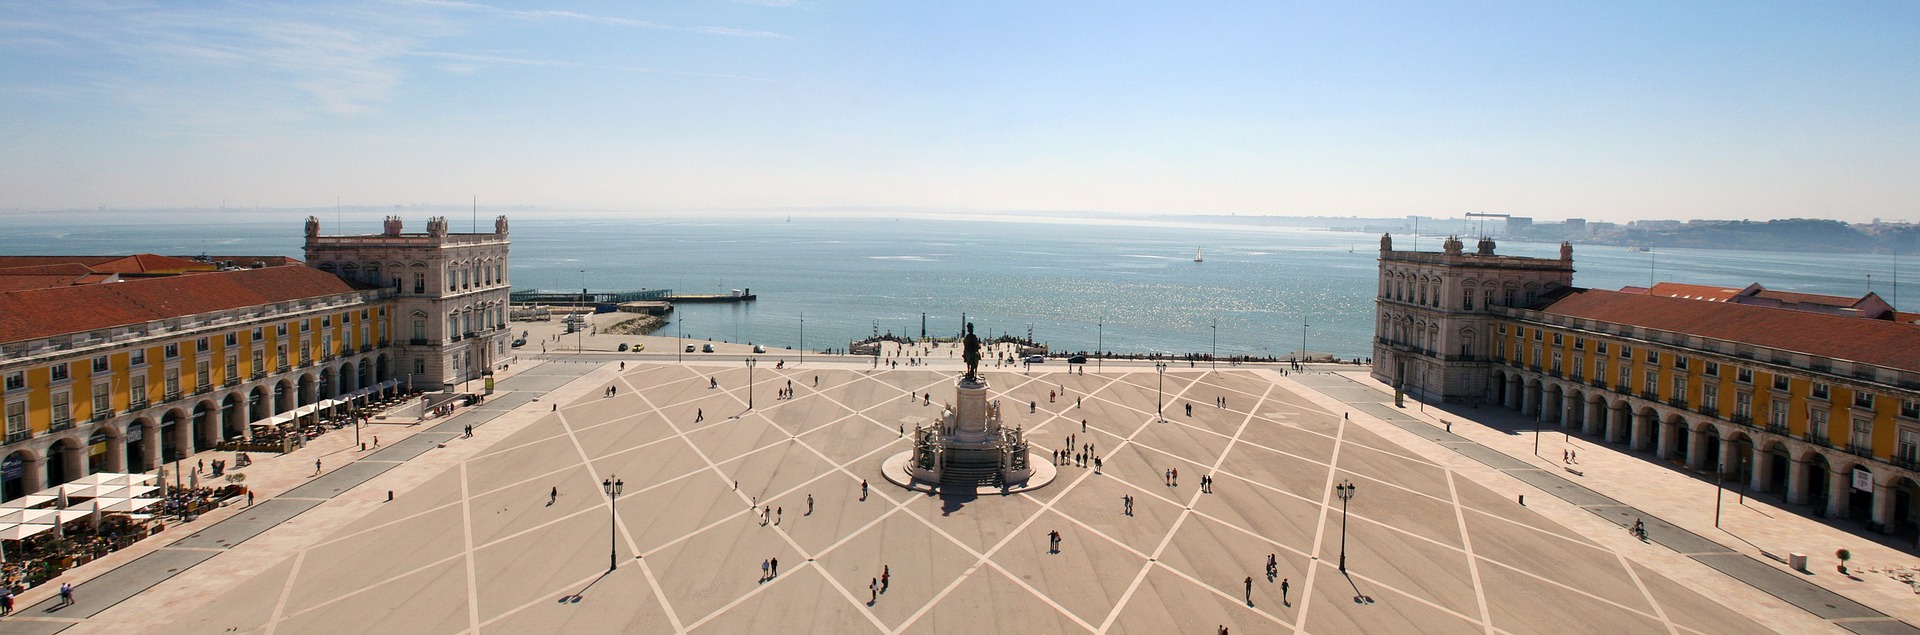 Portugal Urlaub - Städtereise Lissabon Pauschal & Tracker im Vergleich